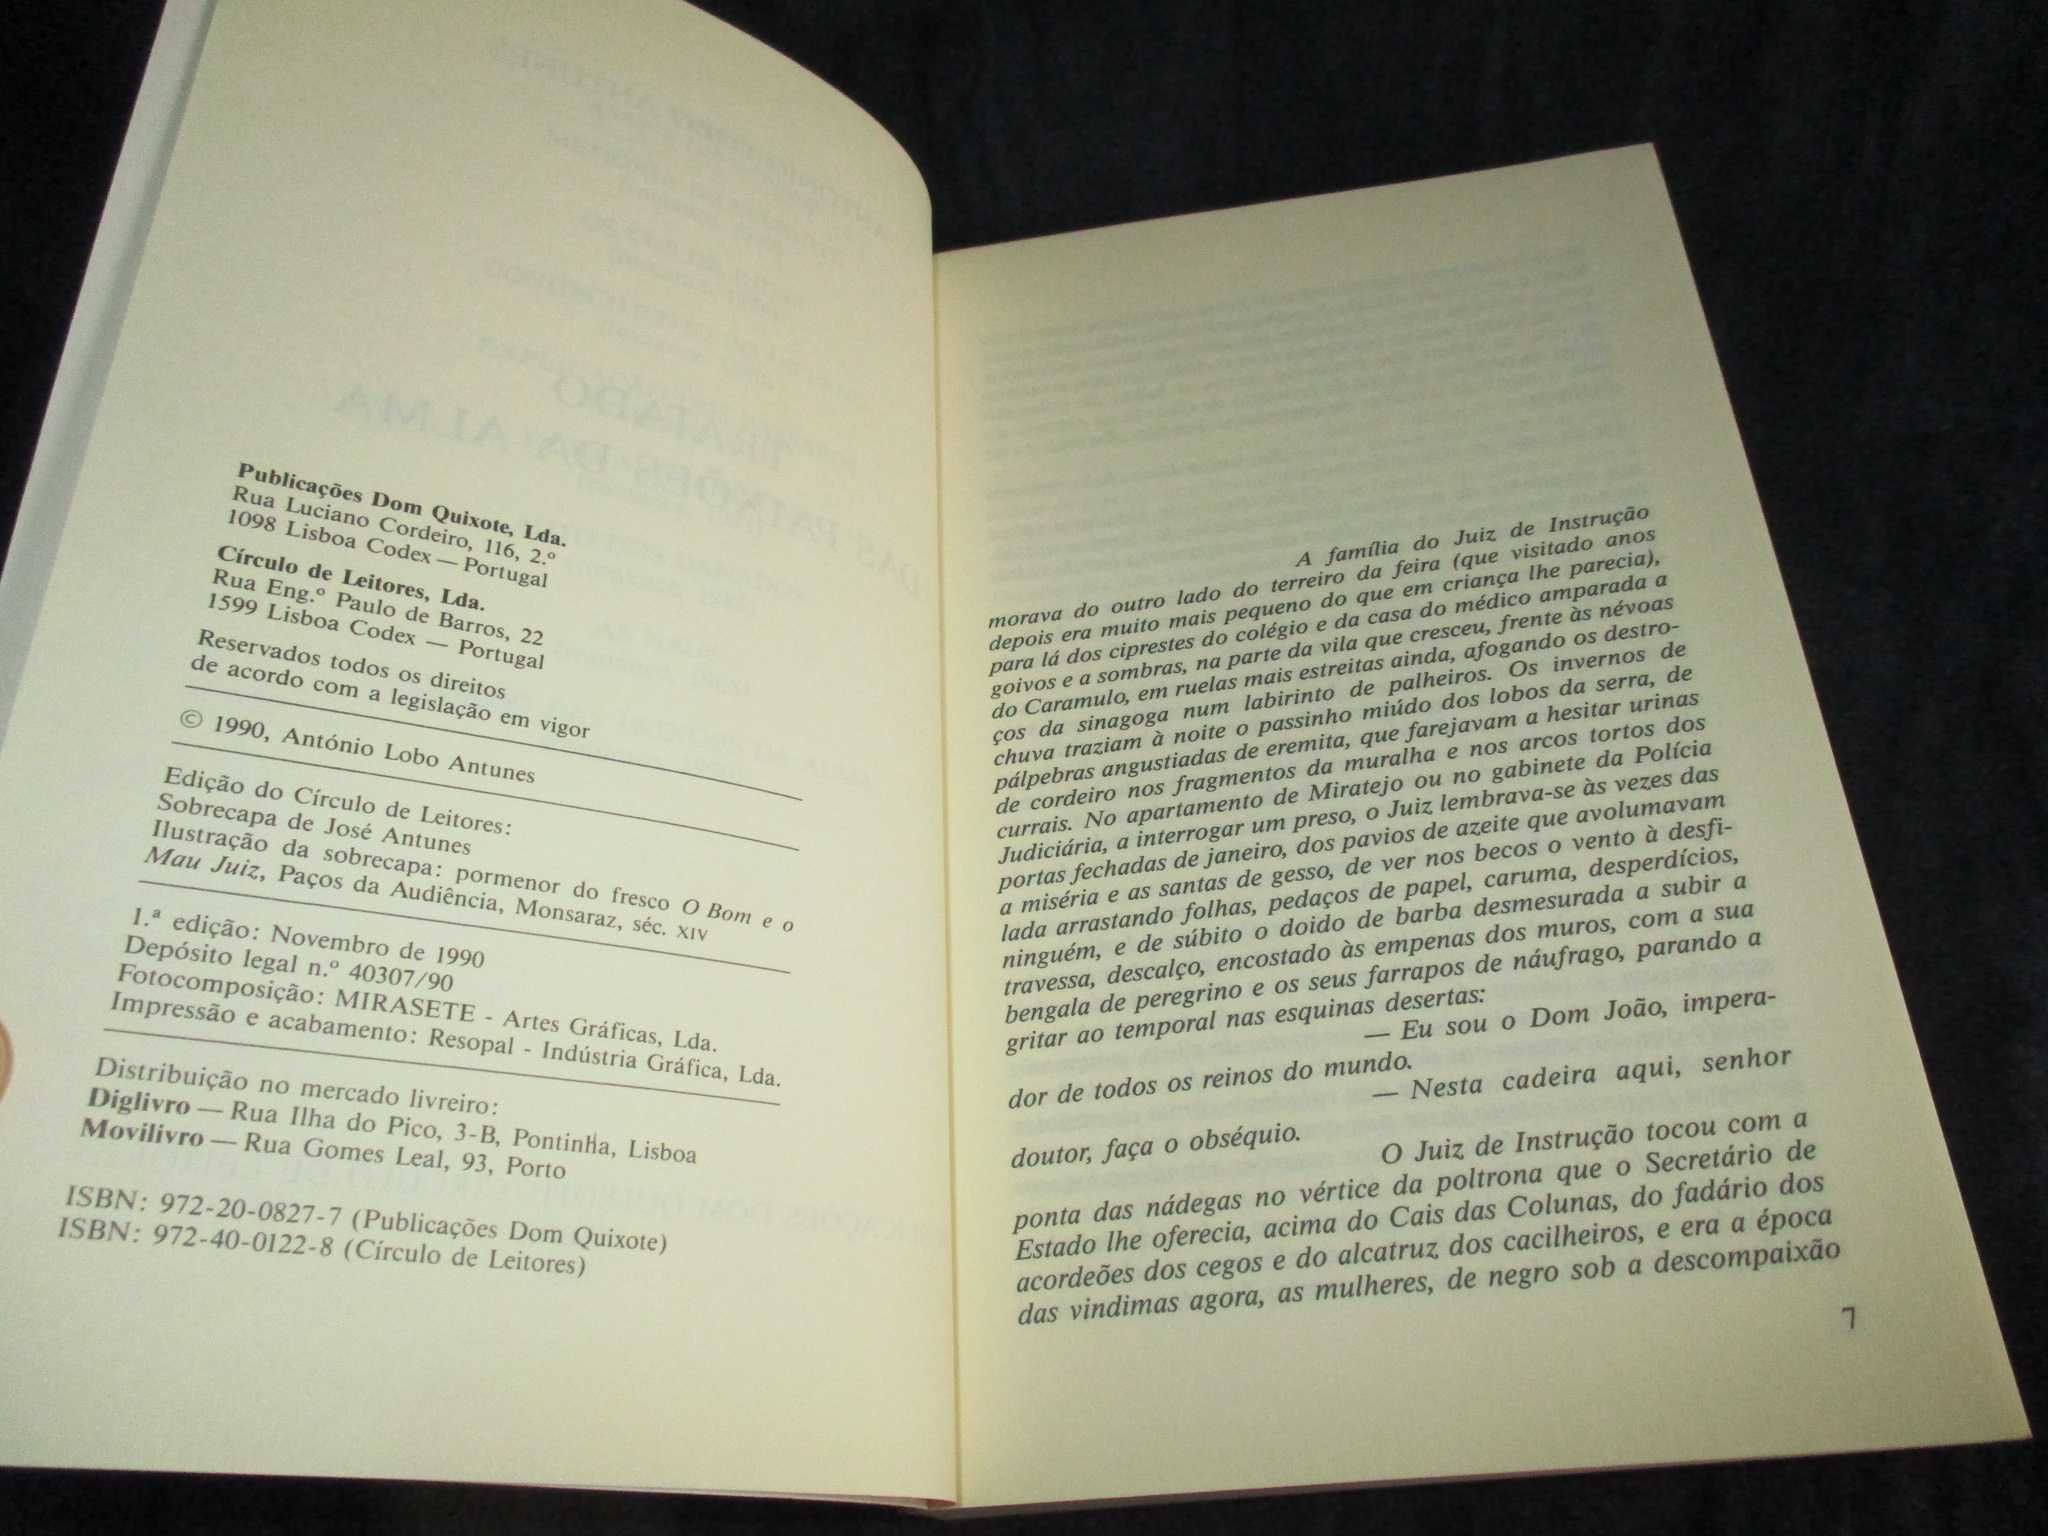 Livro Tratado das Paixões da Alma 1ª edição 1990